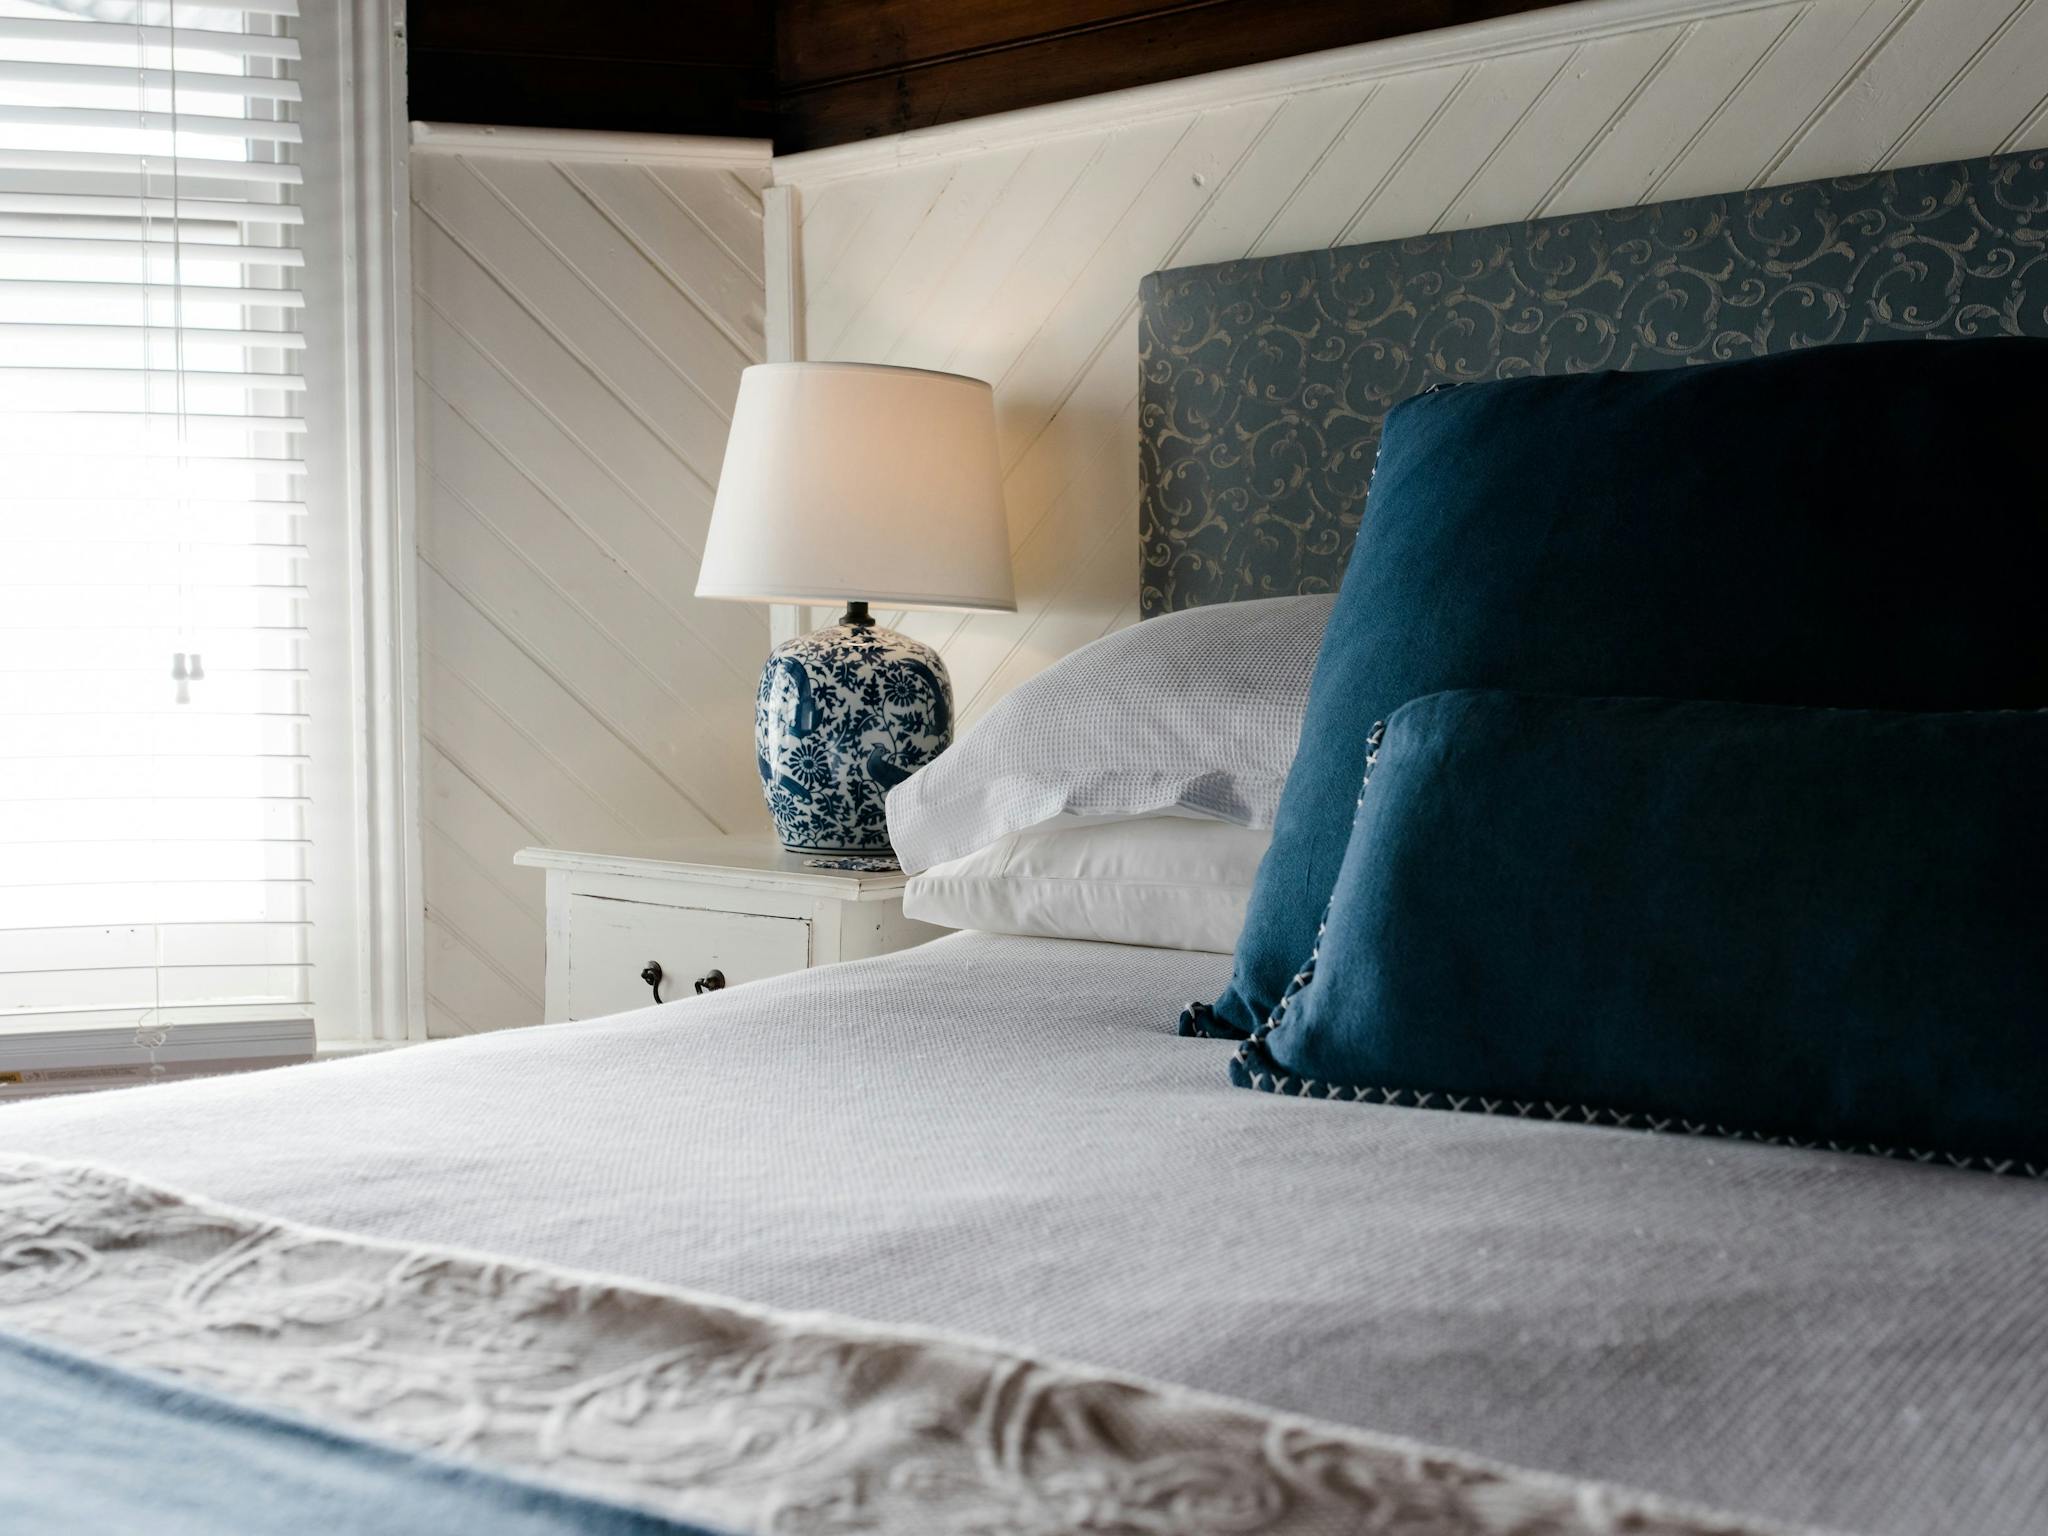 Queen bedded room, very romantic, great honeymoon suite.